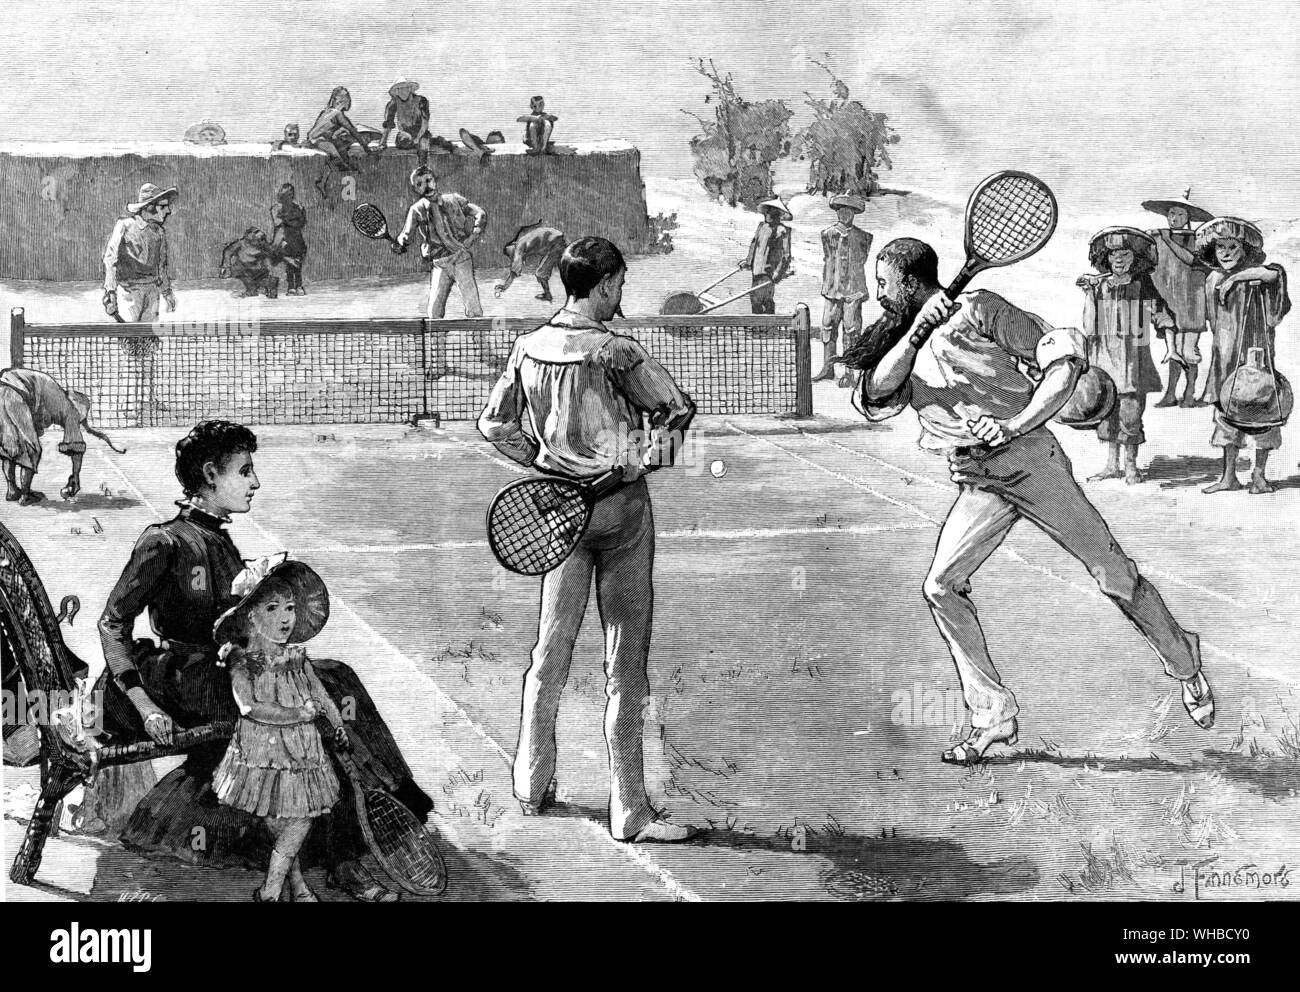 Wir Tennis spielen vor einem bewundernden Publikum 1887 - Europäer Tennis spielen vor einem bewundernden Publikum an Pakhai, Chinesisch Vertrag Port.. Stockfoto